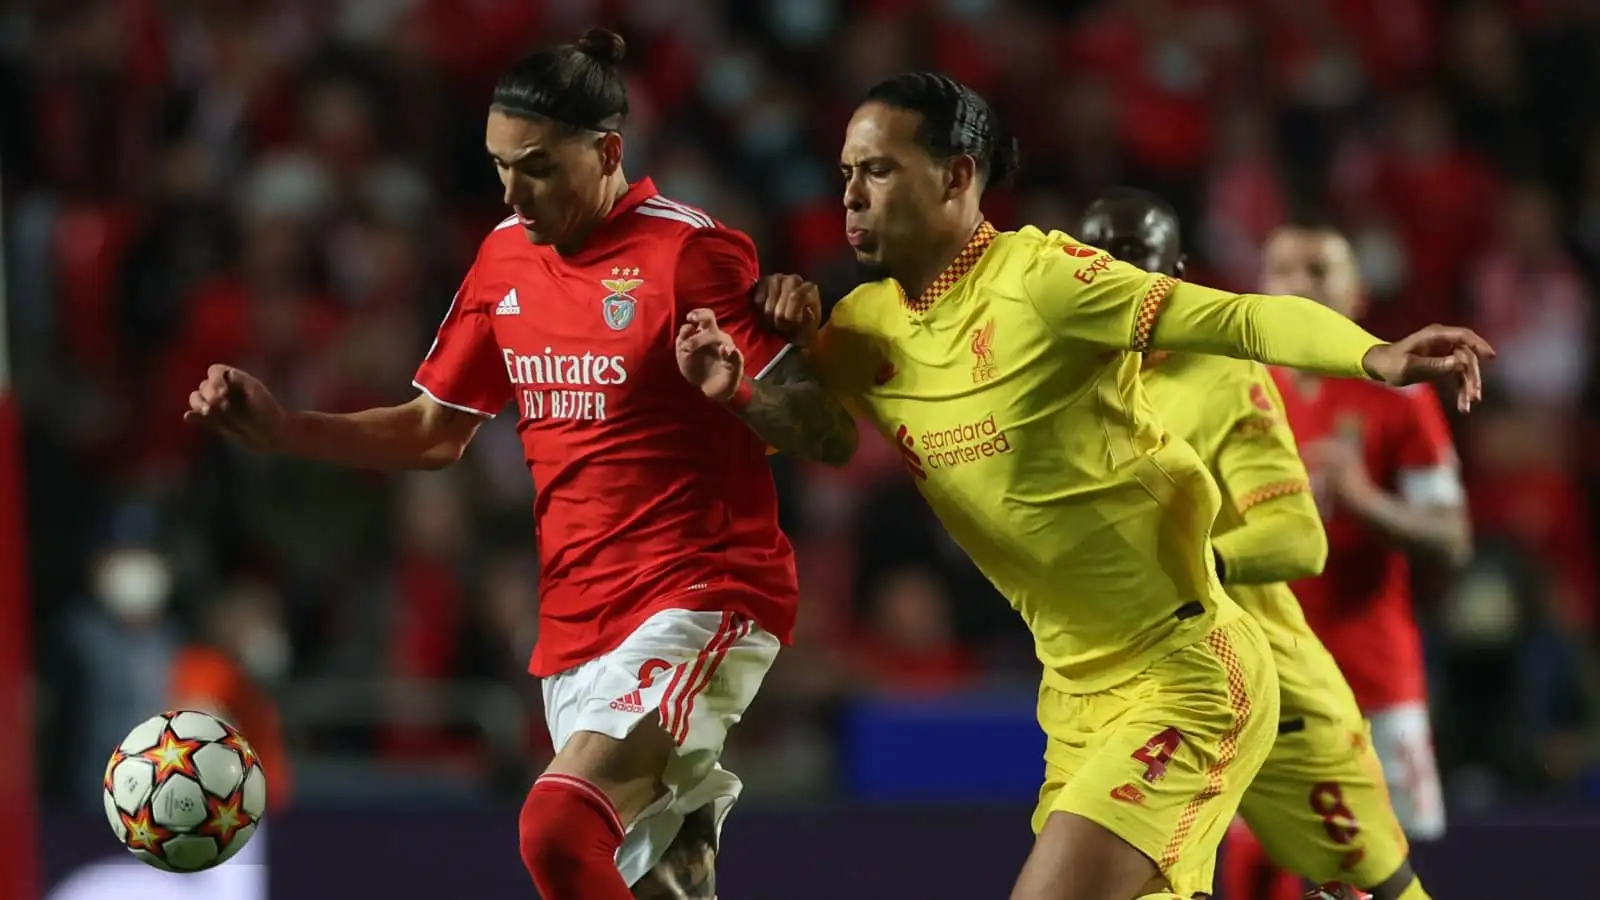 Benfica striker Darwin Nunez tussling with Liverpool defender Virgil van Dijk